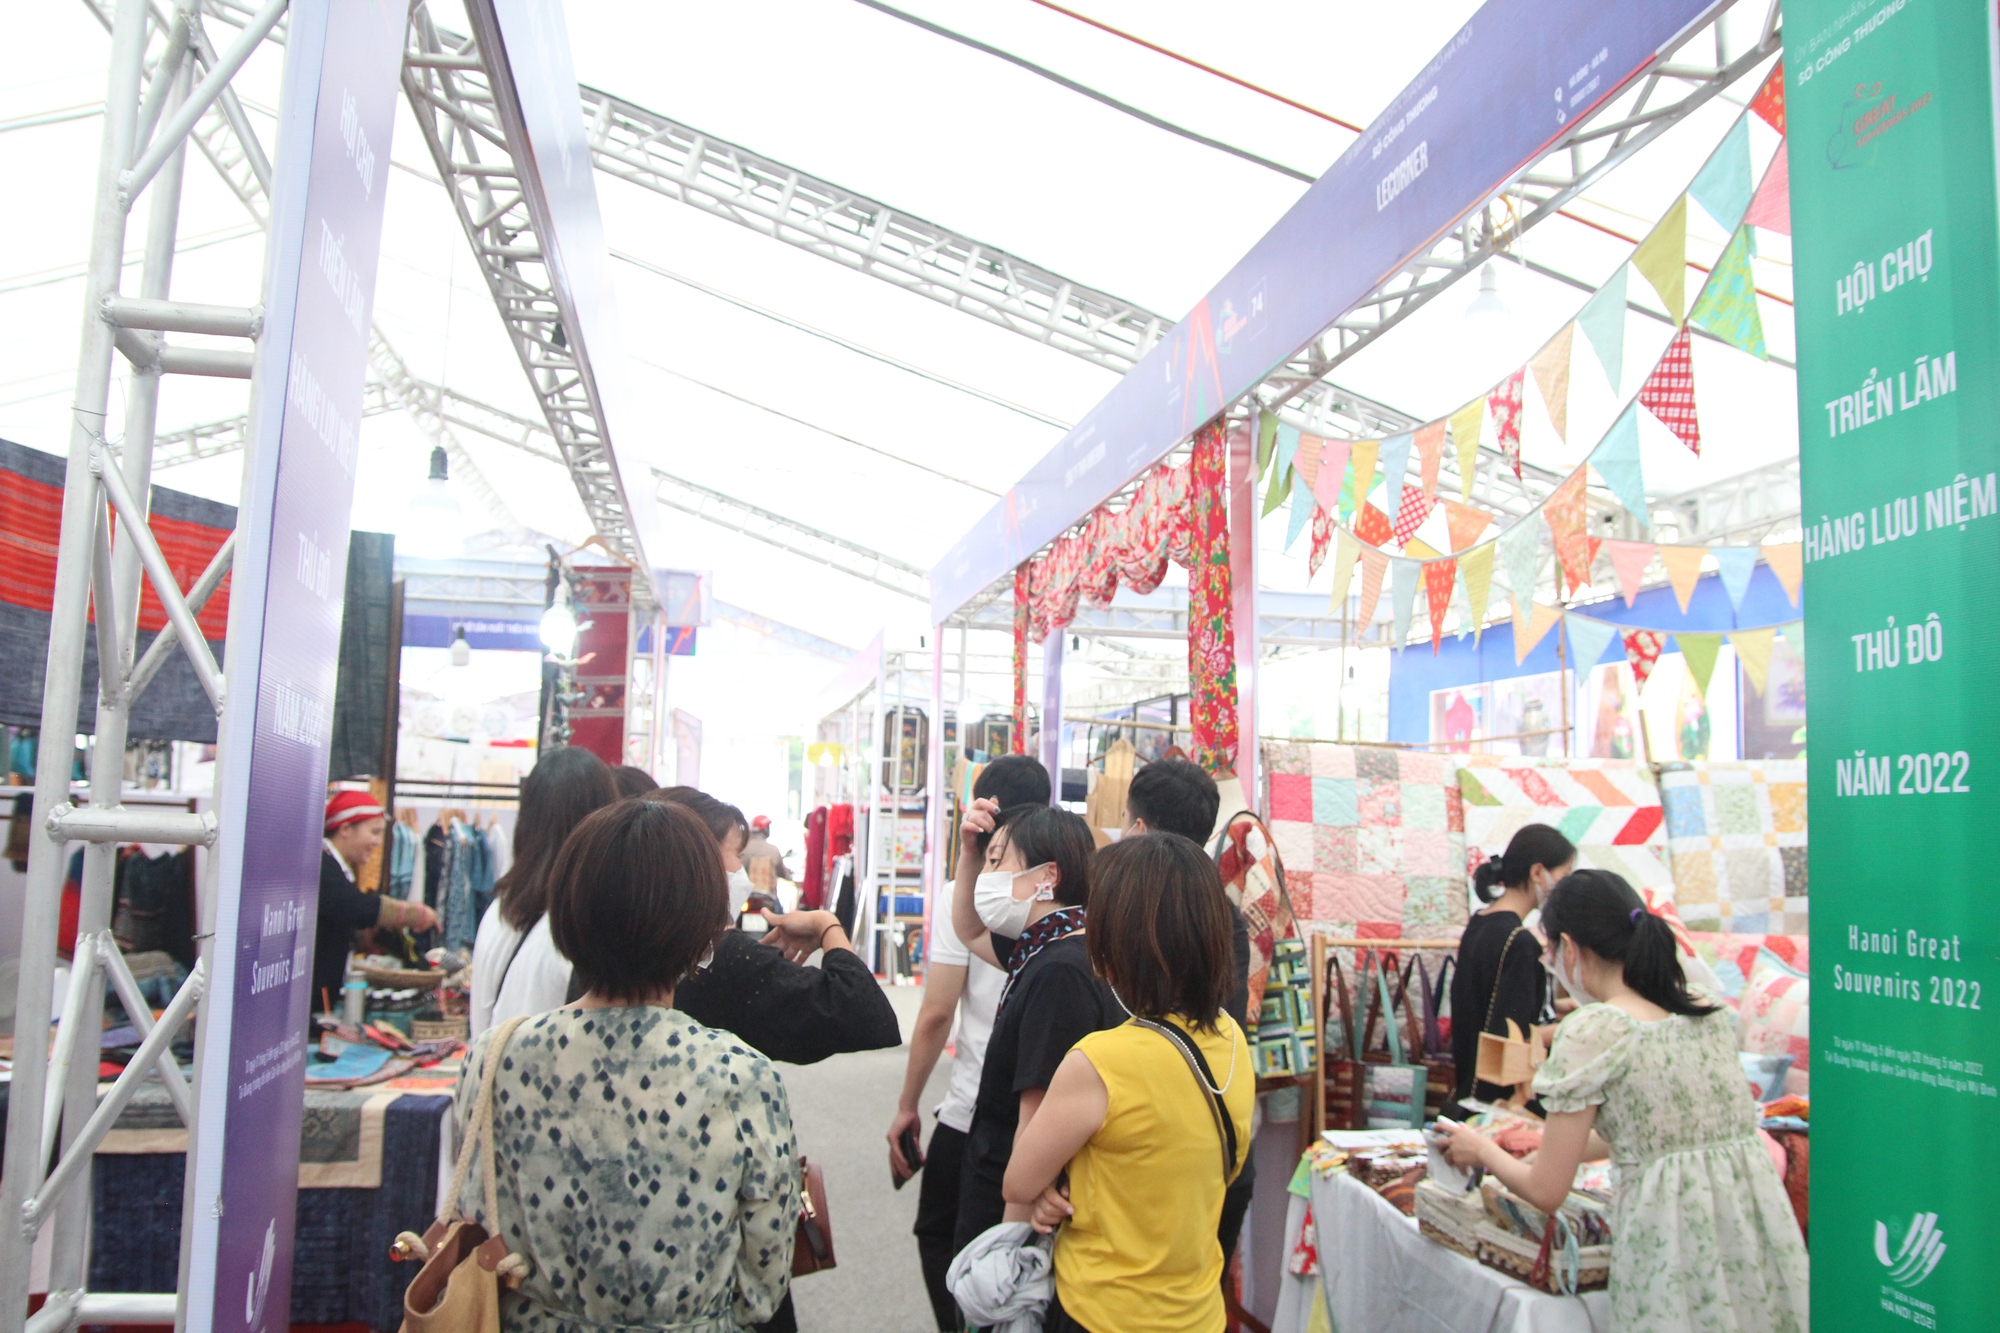 Du khách nước ngoài hào hứng với các sản phẩm thủ công tại hội chợ triển lãm hàng lưu niệm Thủ đô 2022 - Ảnh 3.